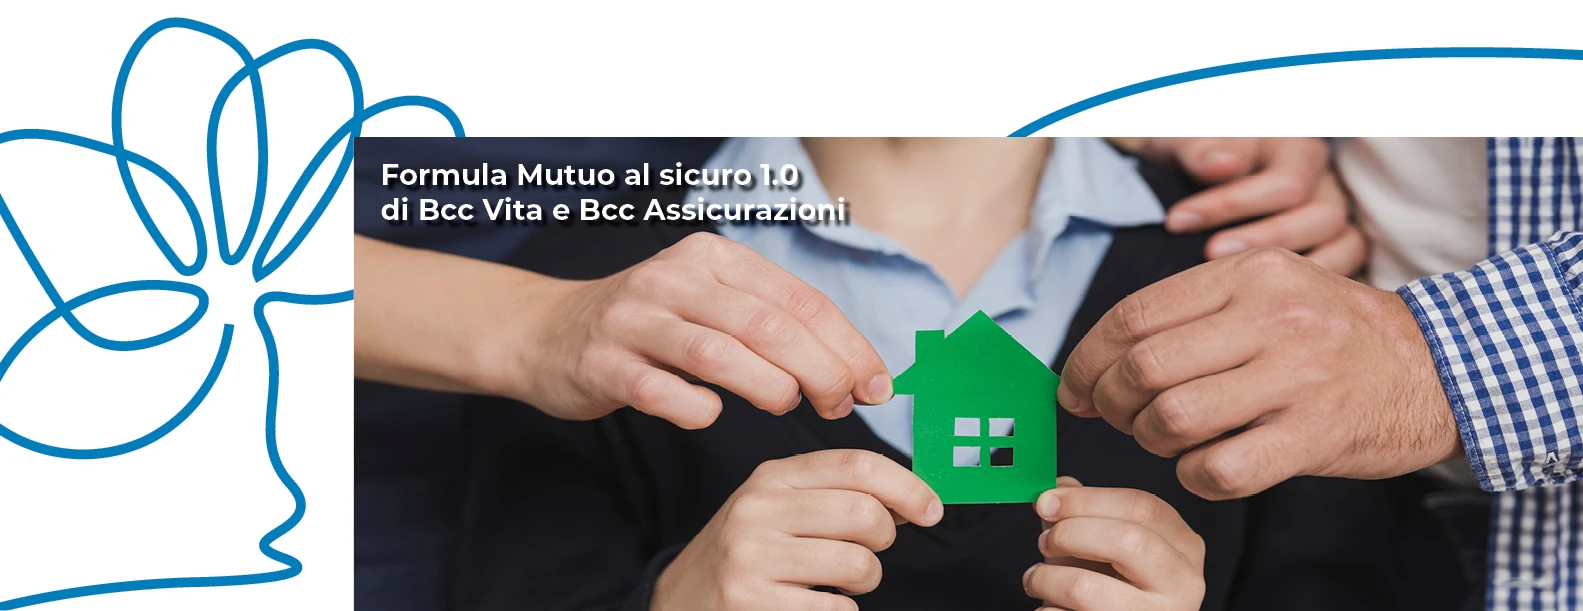 Formula Mutuo al sicuro 1.0 di Bcc Vita e Bcc Assicurazioni